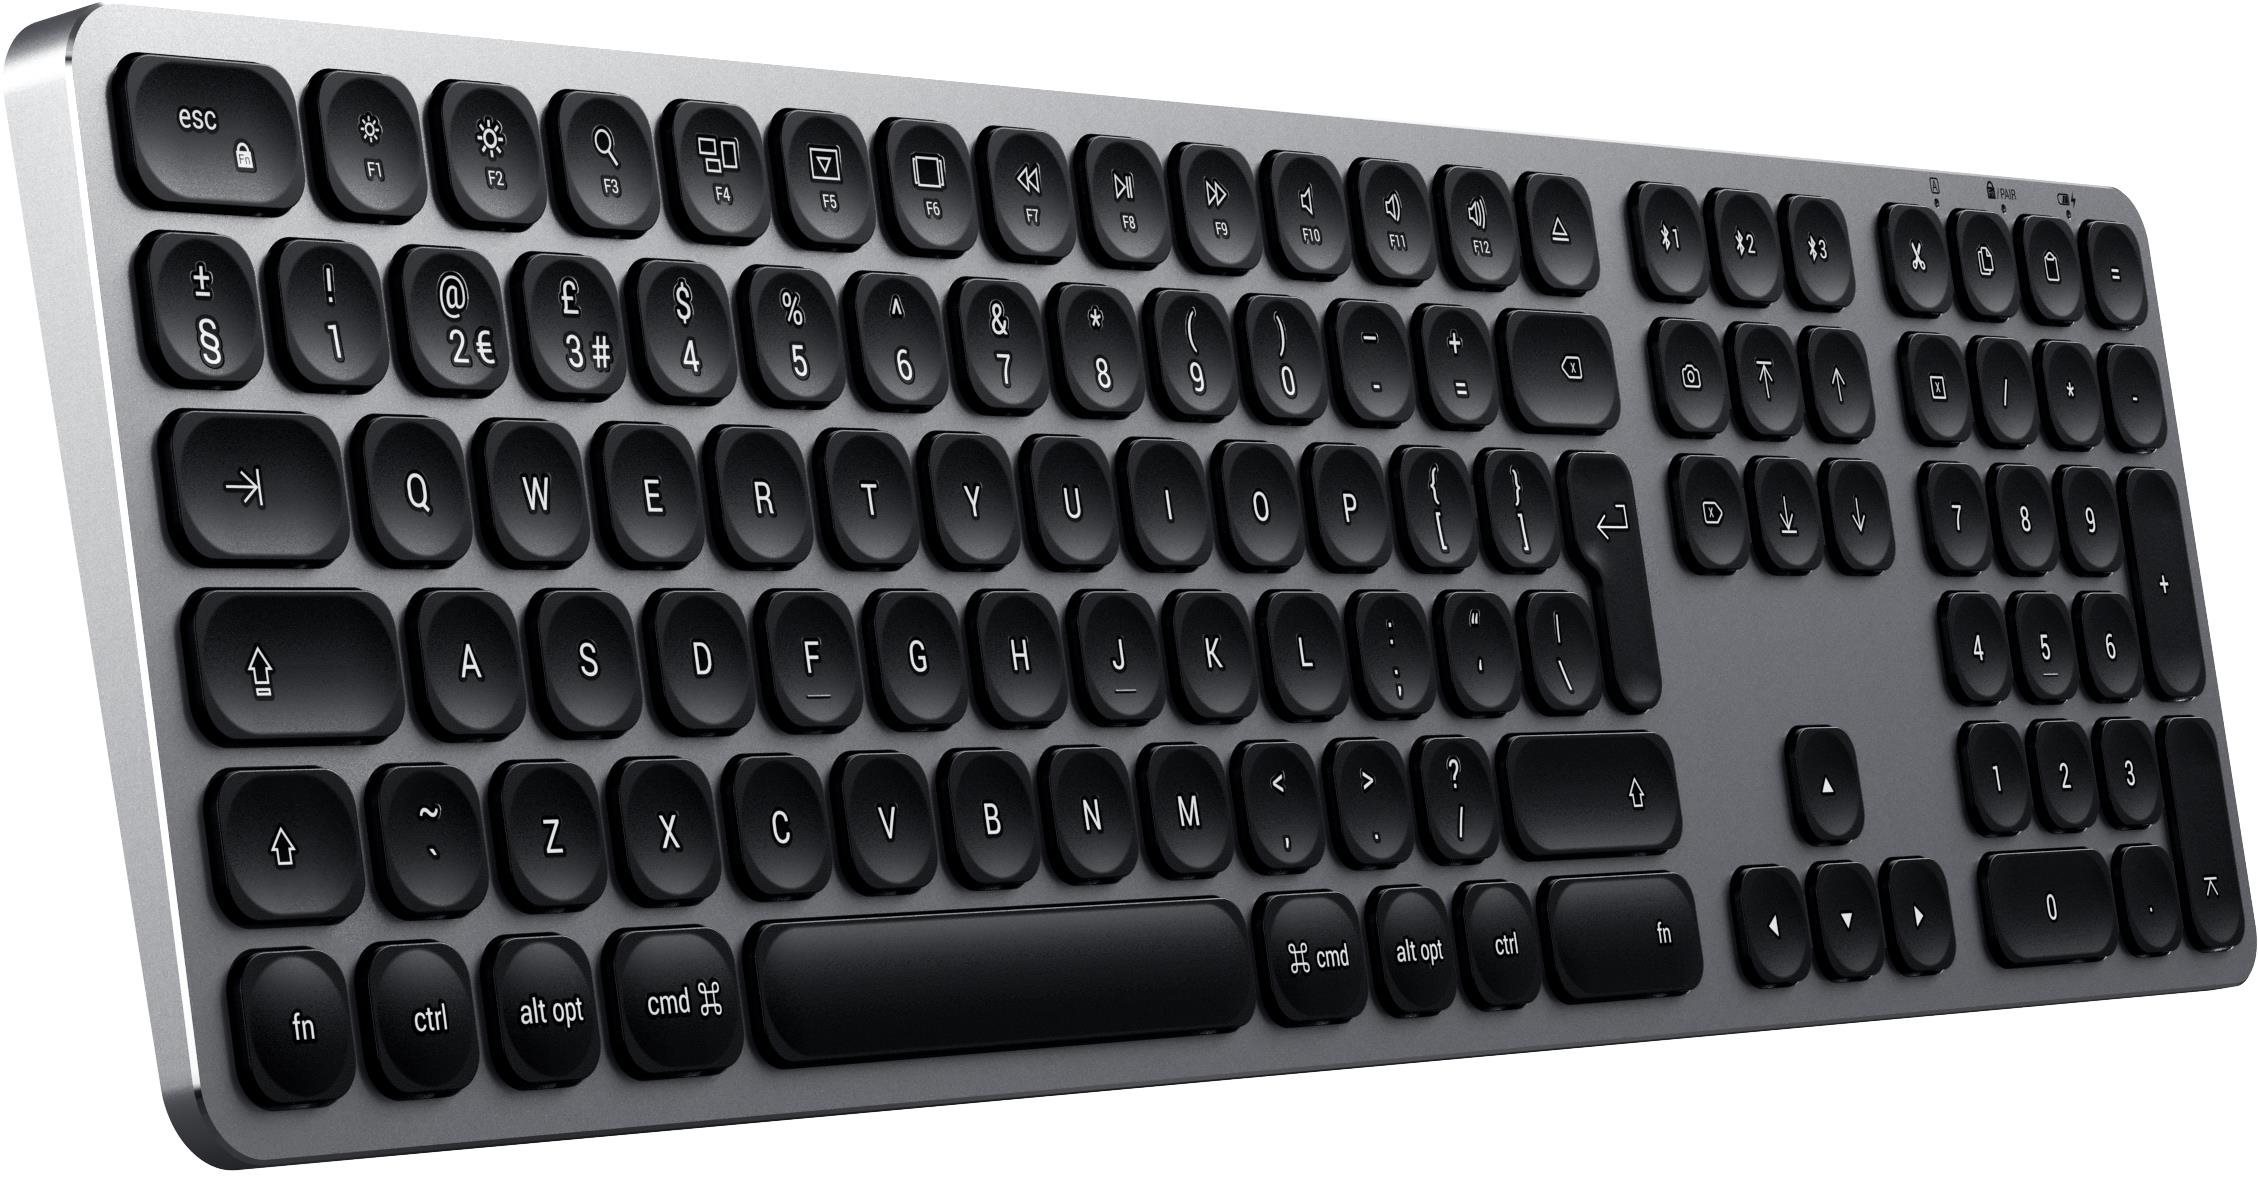 Klávesnice Satechi Aluminum Bluetooth Wireless Keyboard for Mac - Space Gray - US Boční pohled